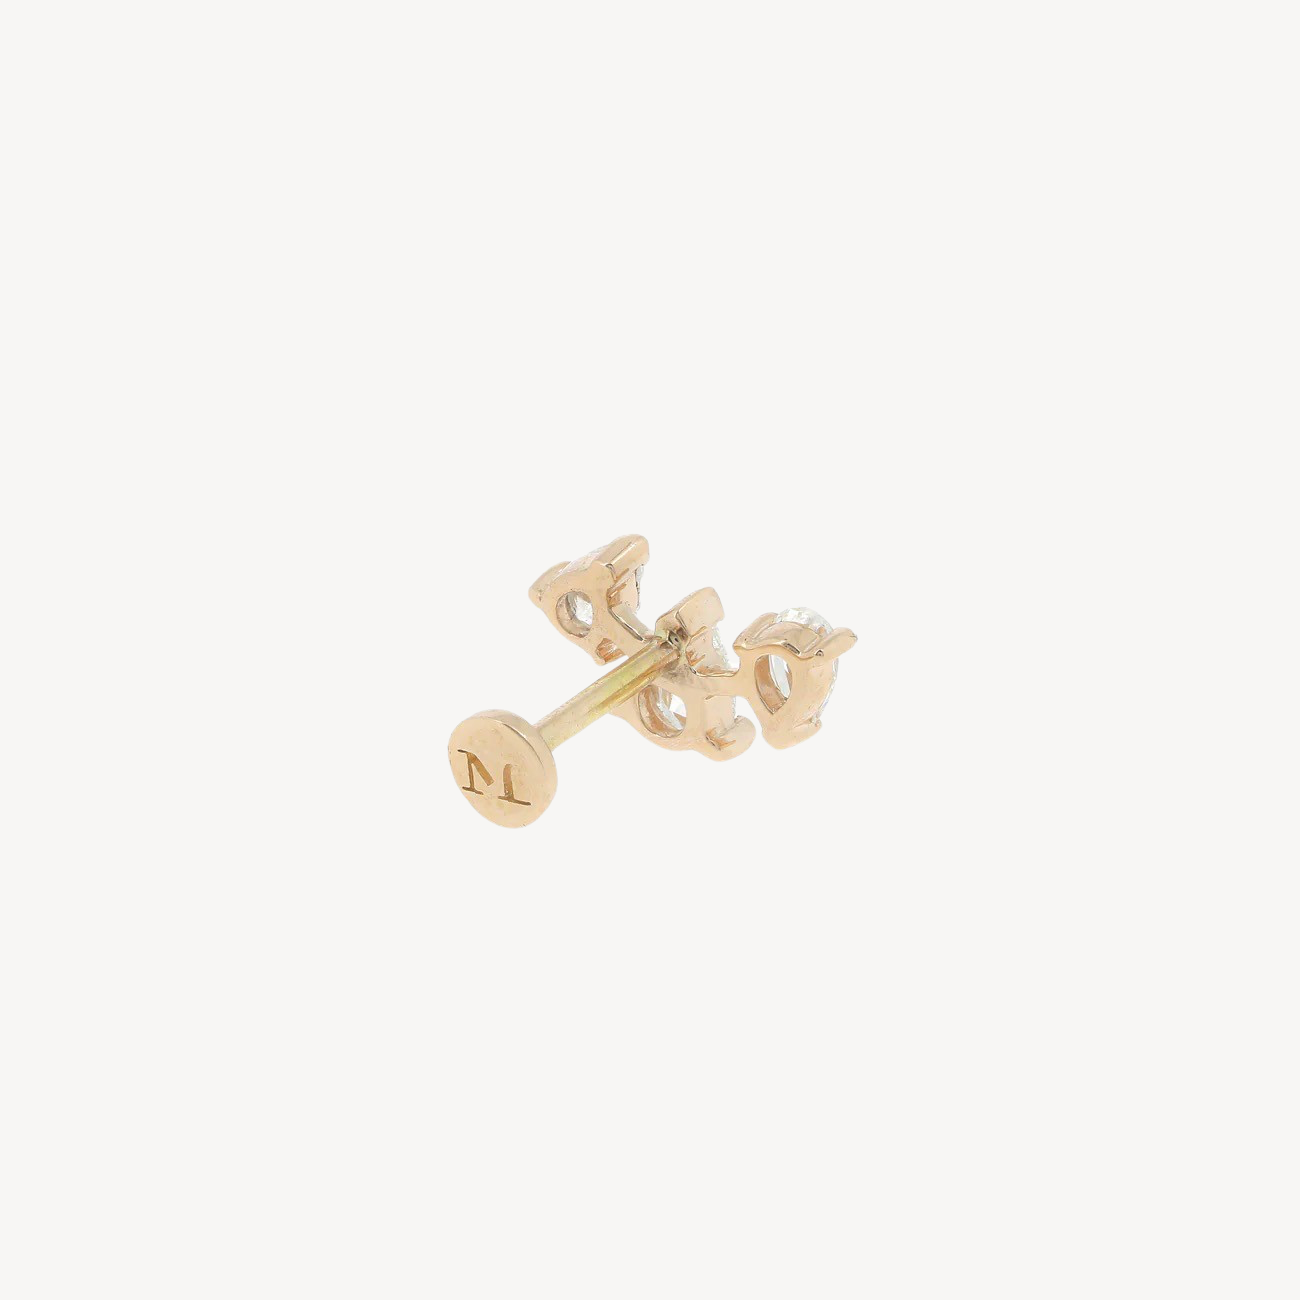 Rose Gold Diamond Three Spaced Pears Stud